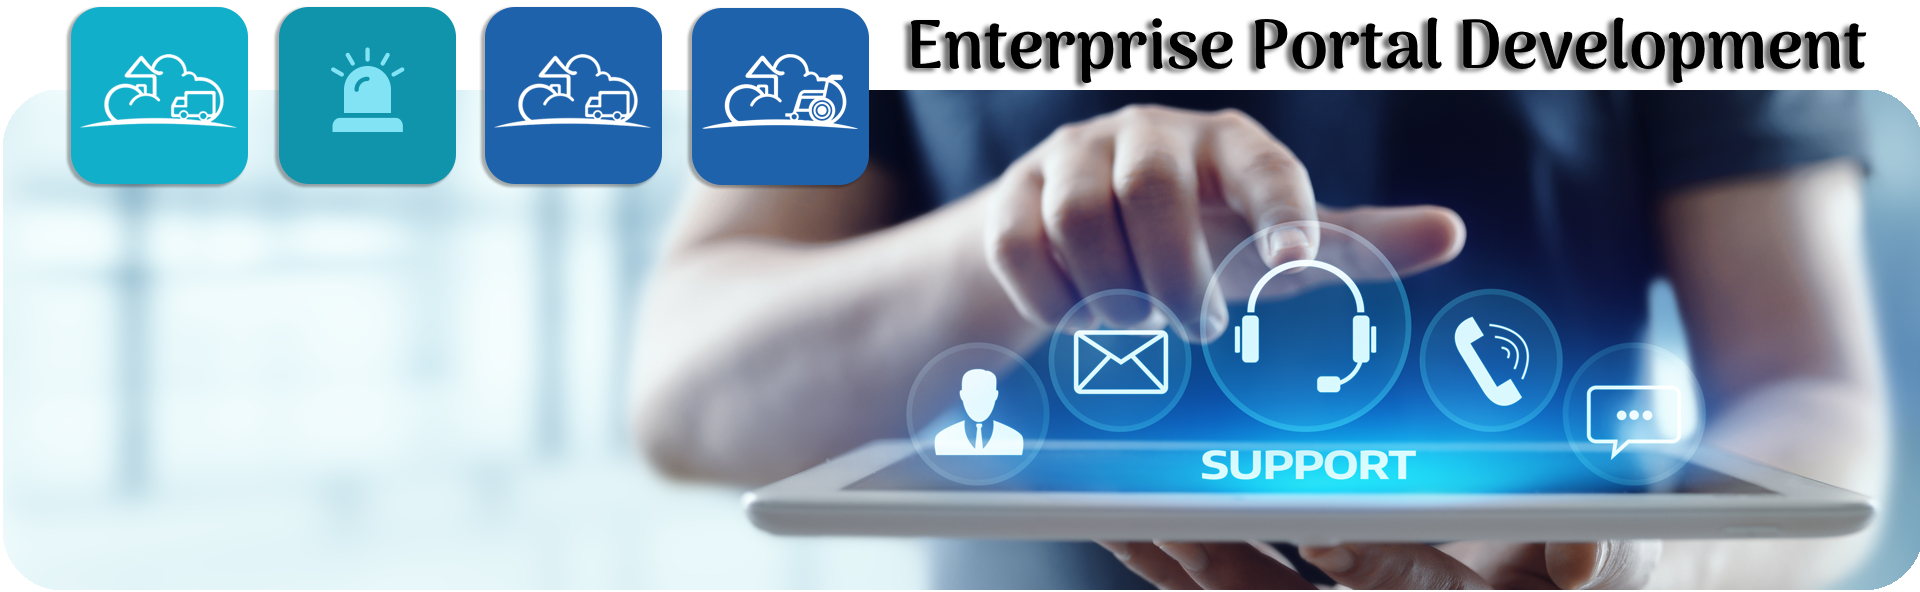 Enterprise Portal Development